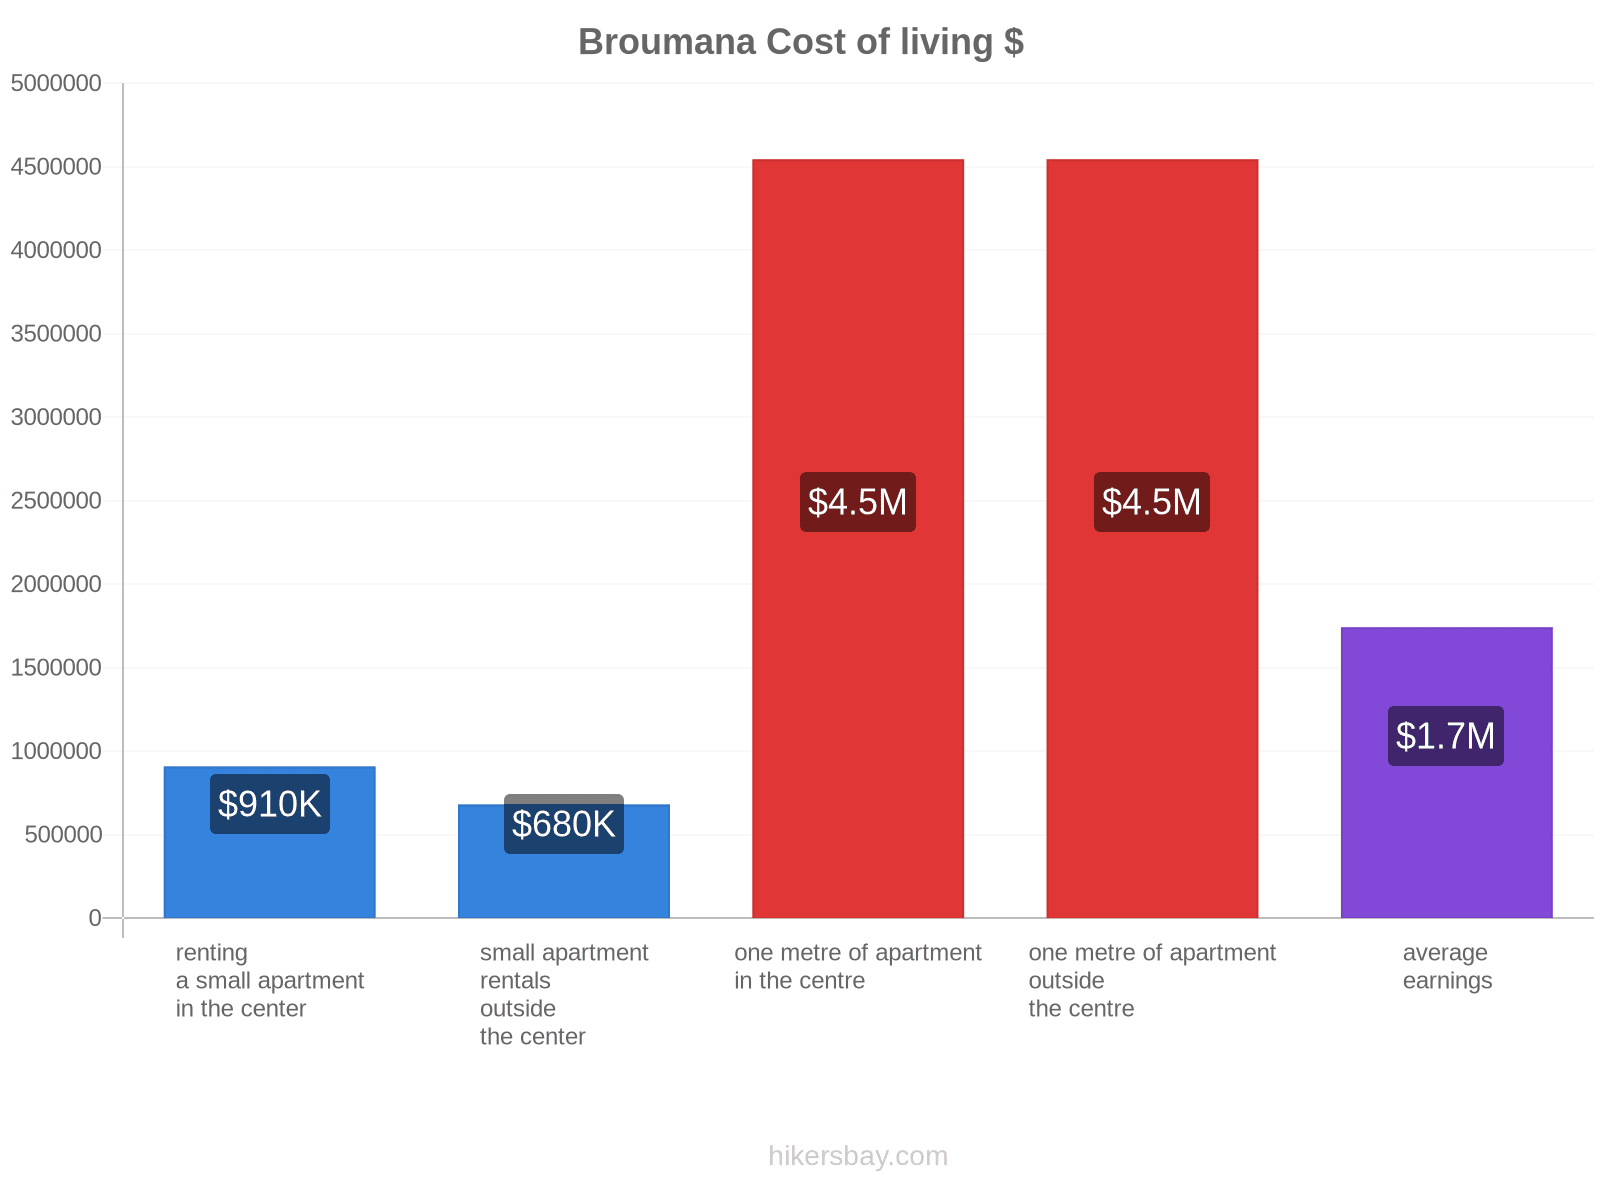 Broumana cost of living hikersbay.com